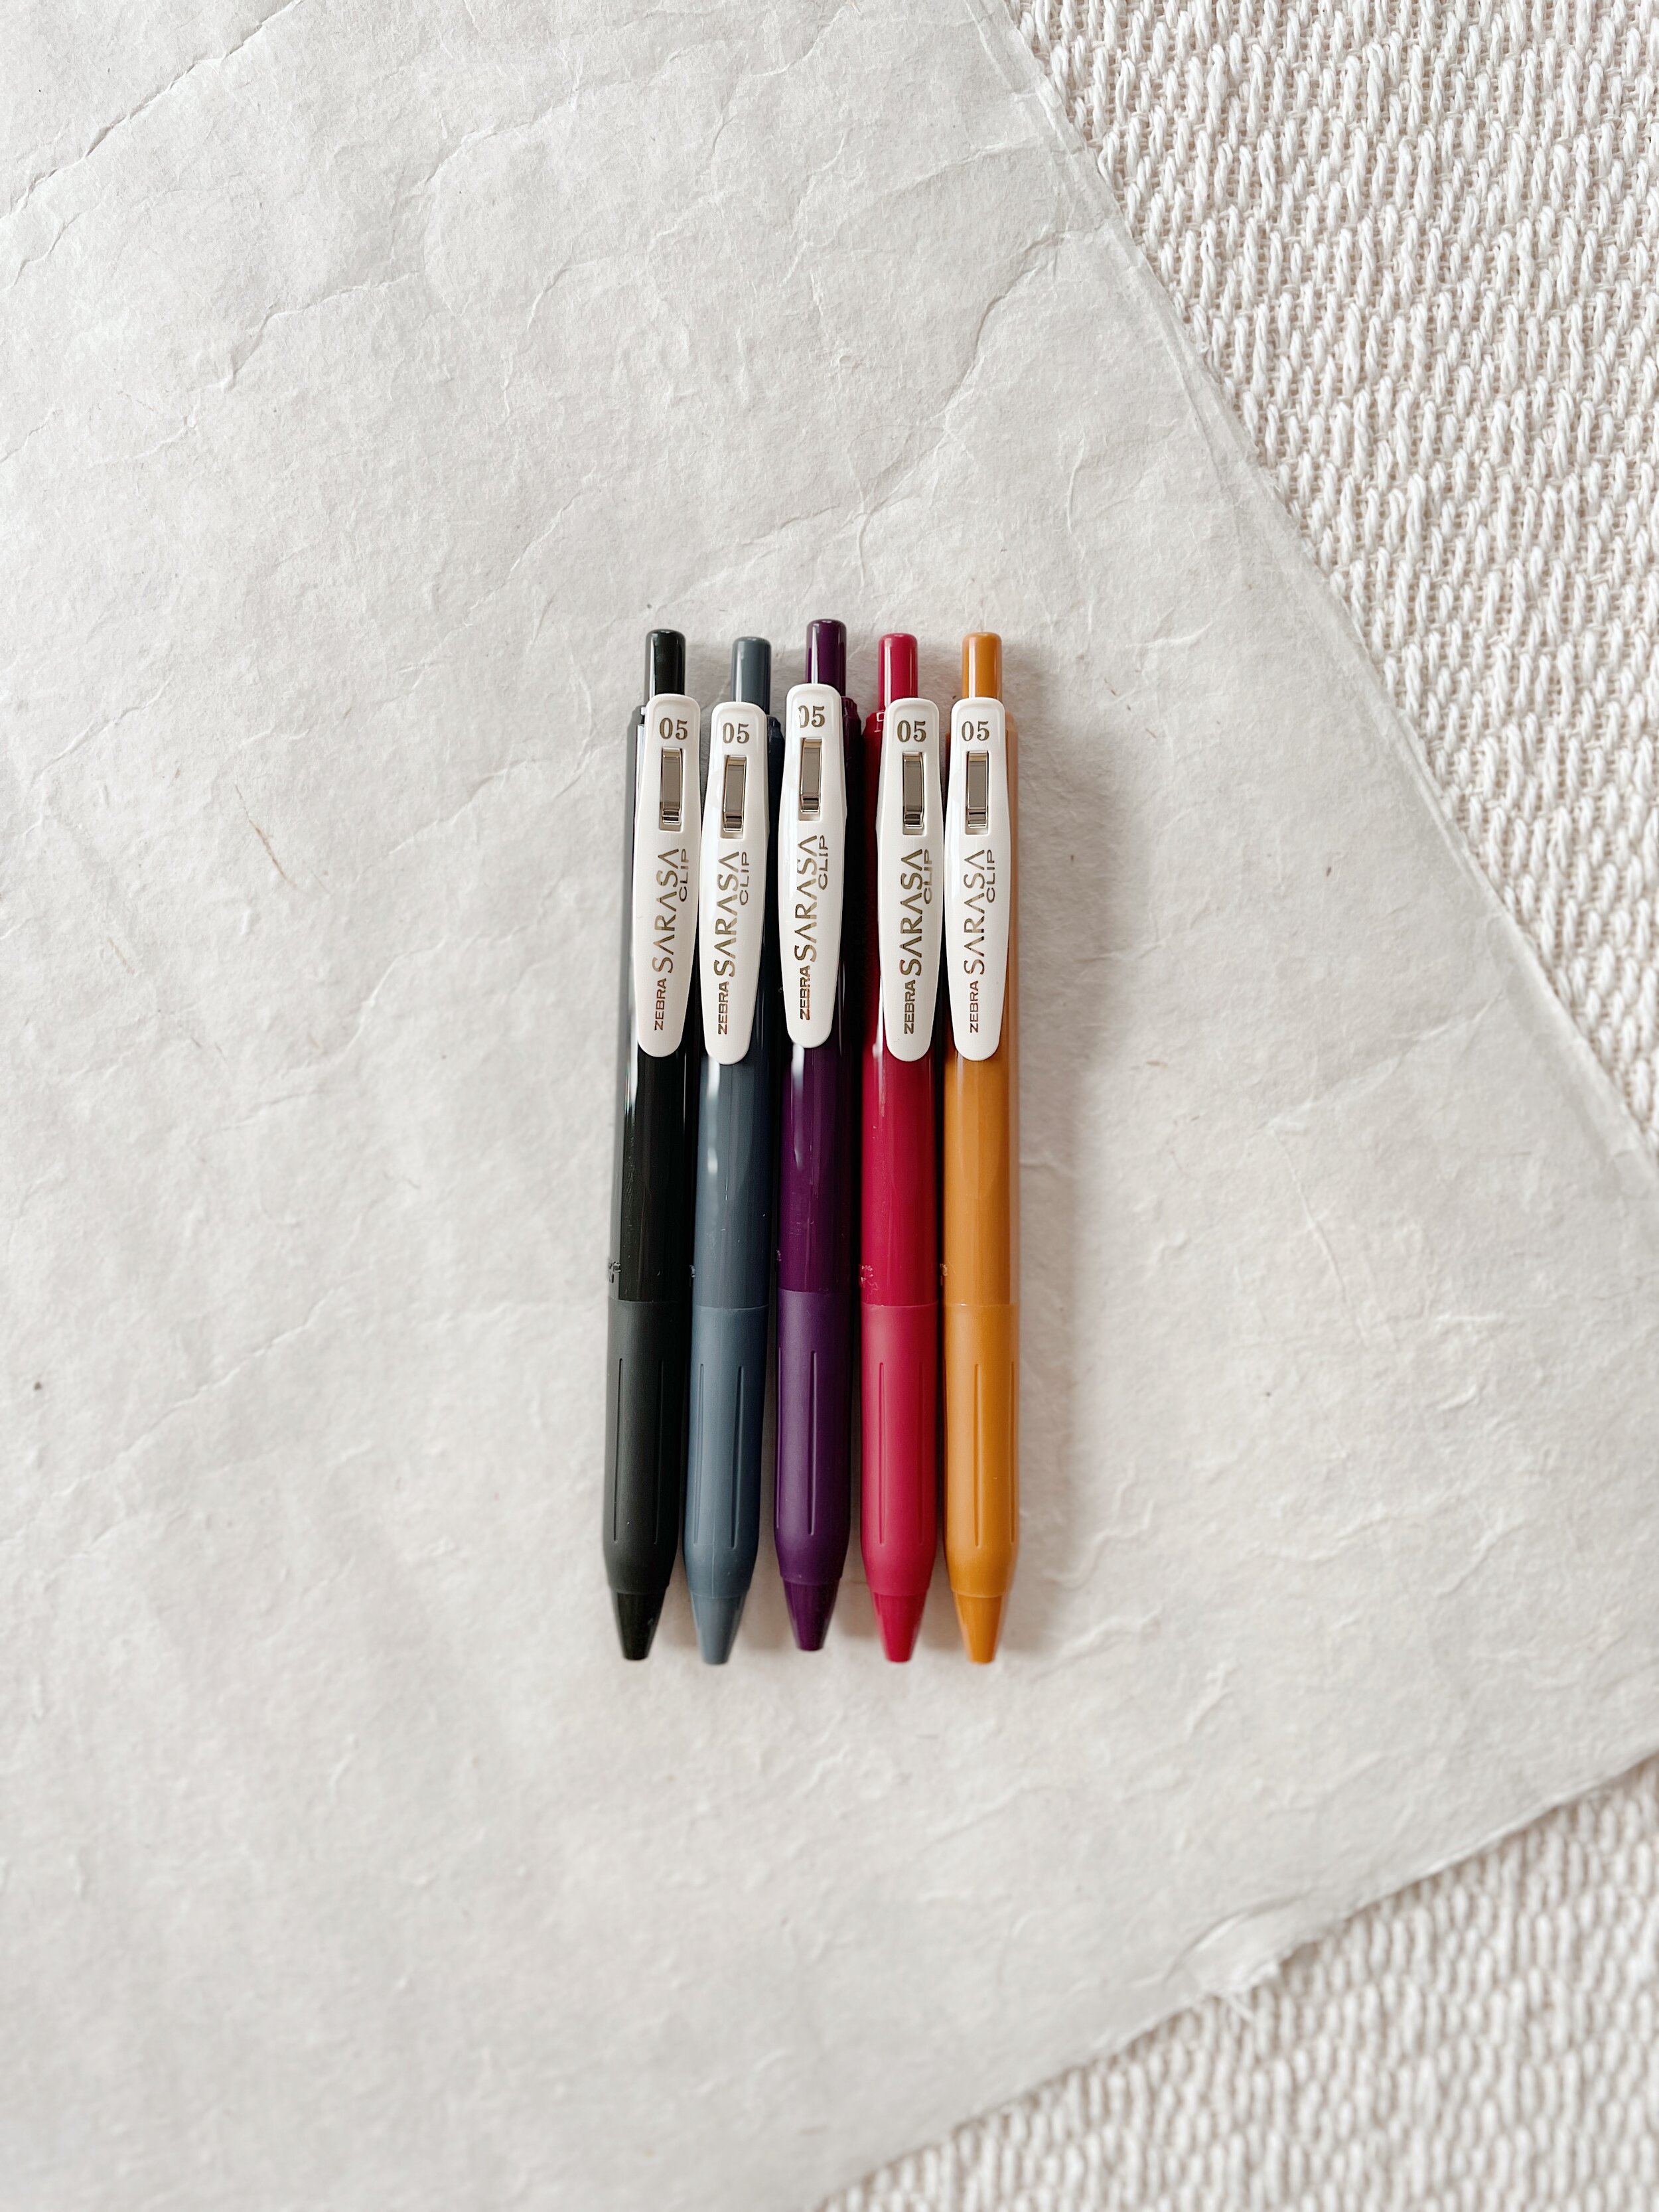 zebra sarasa clip gel pen 0.5 mm (vintage colors) — Weaver House